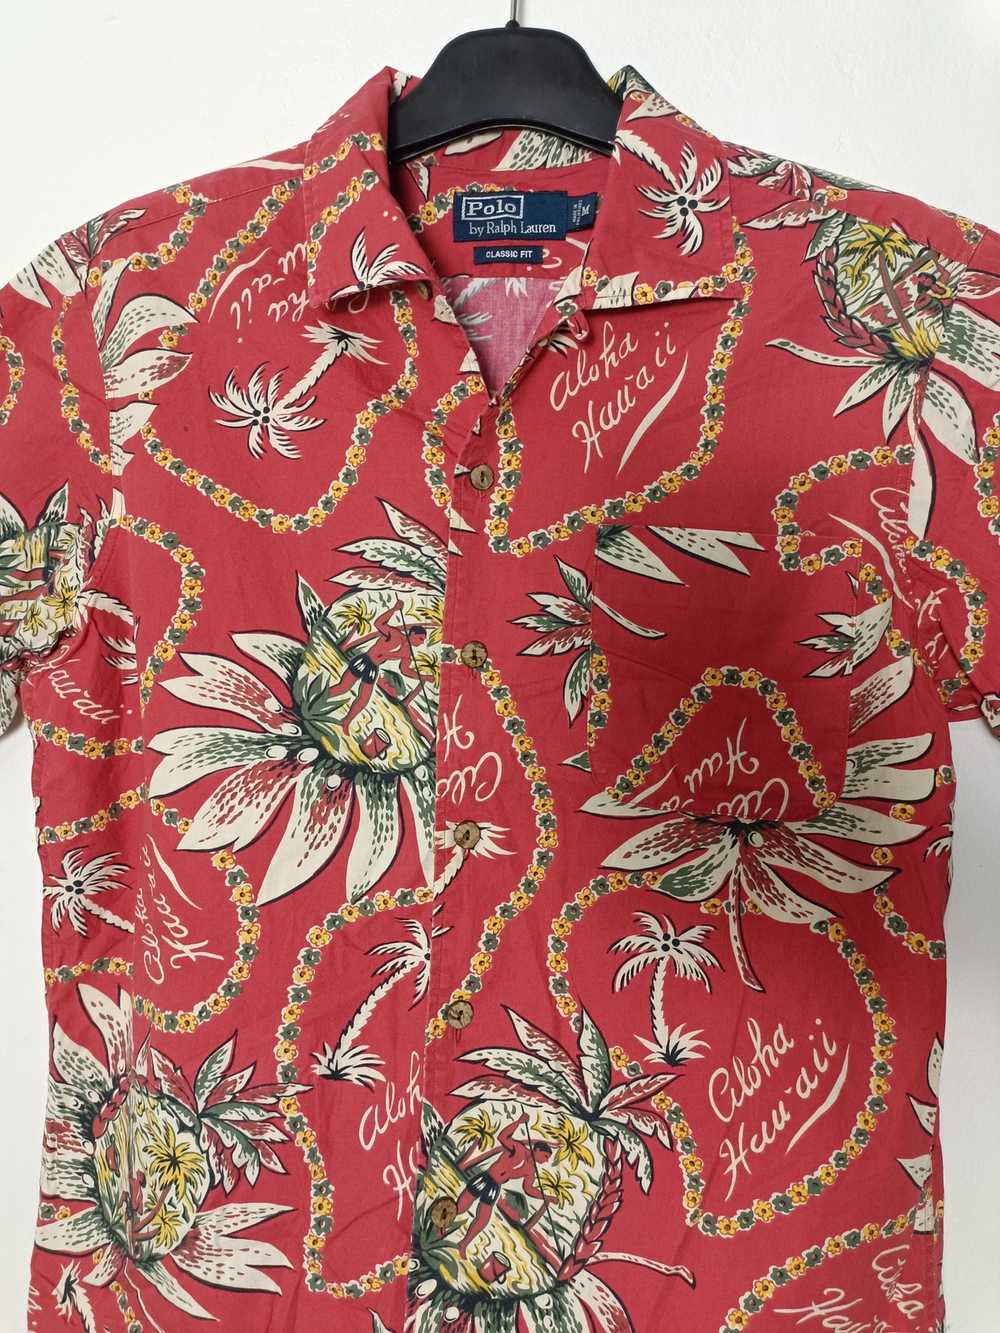 Ralph lauren floral shirt - Gem